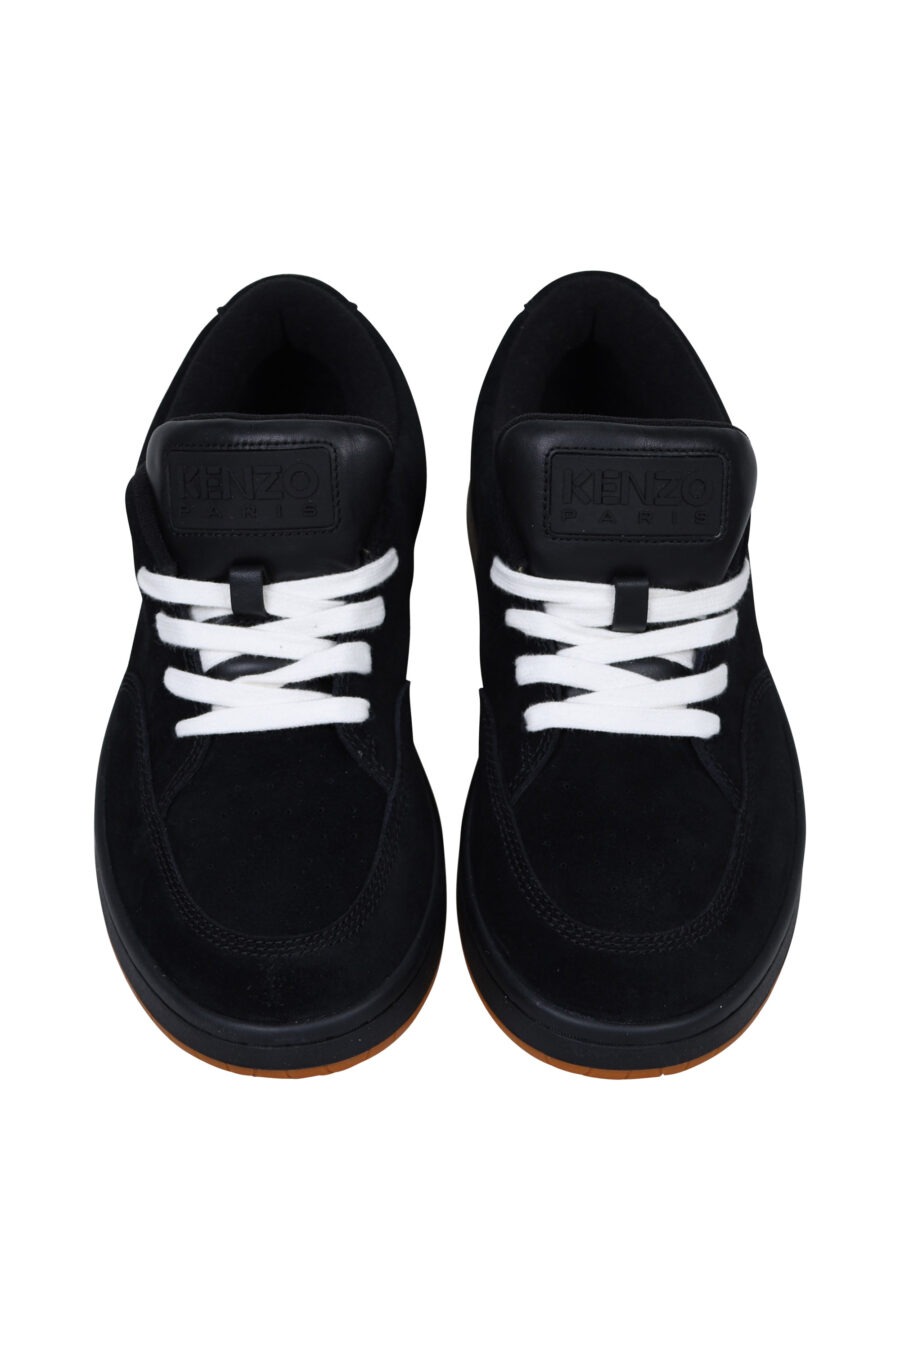 Zapatillas negras "kenzo dome" con minilogo y suela marrón - 3612230549111 4